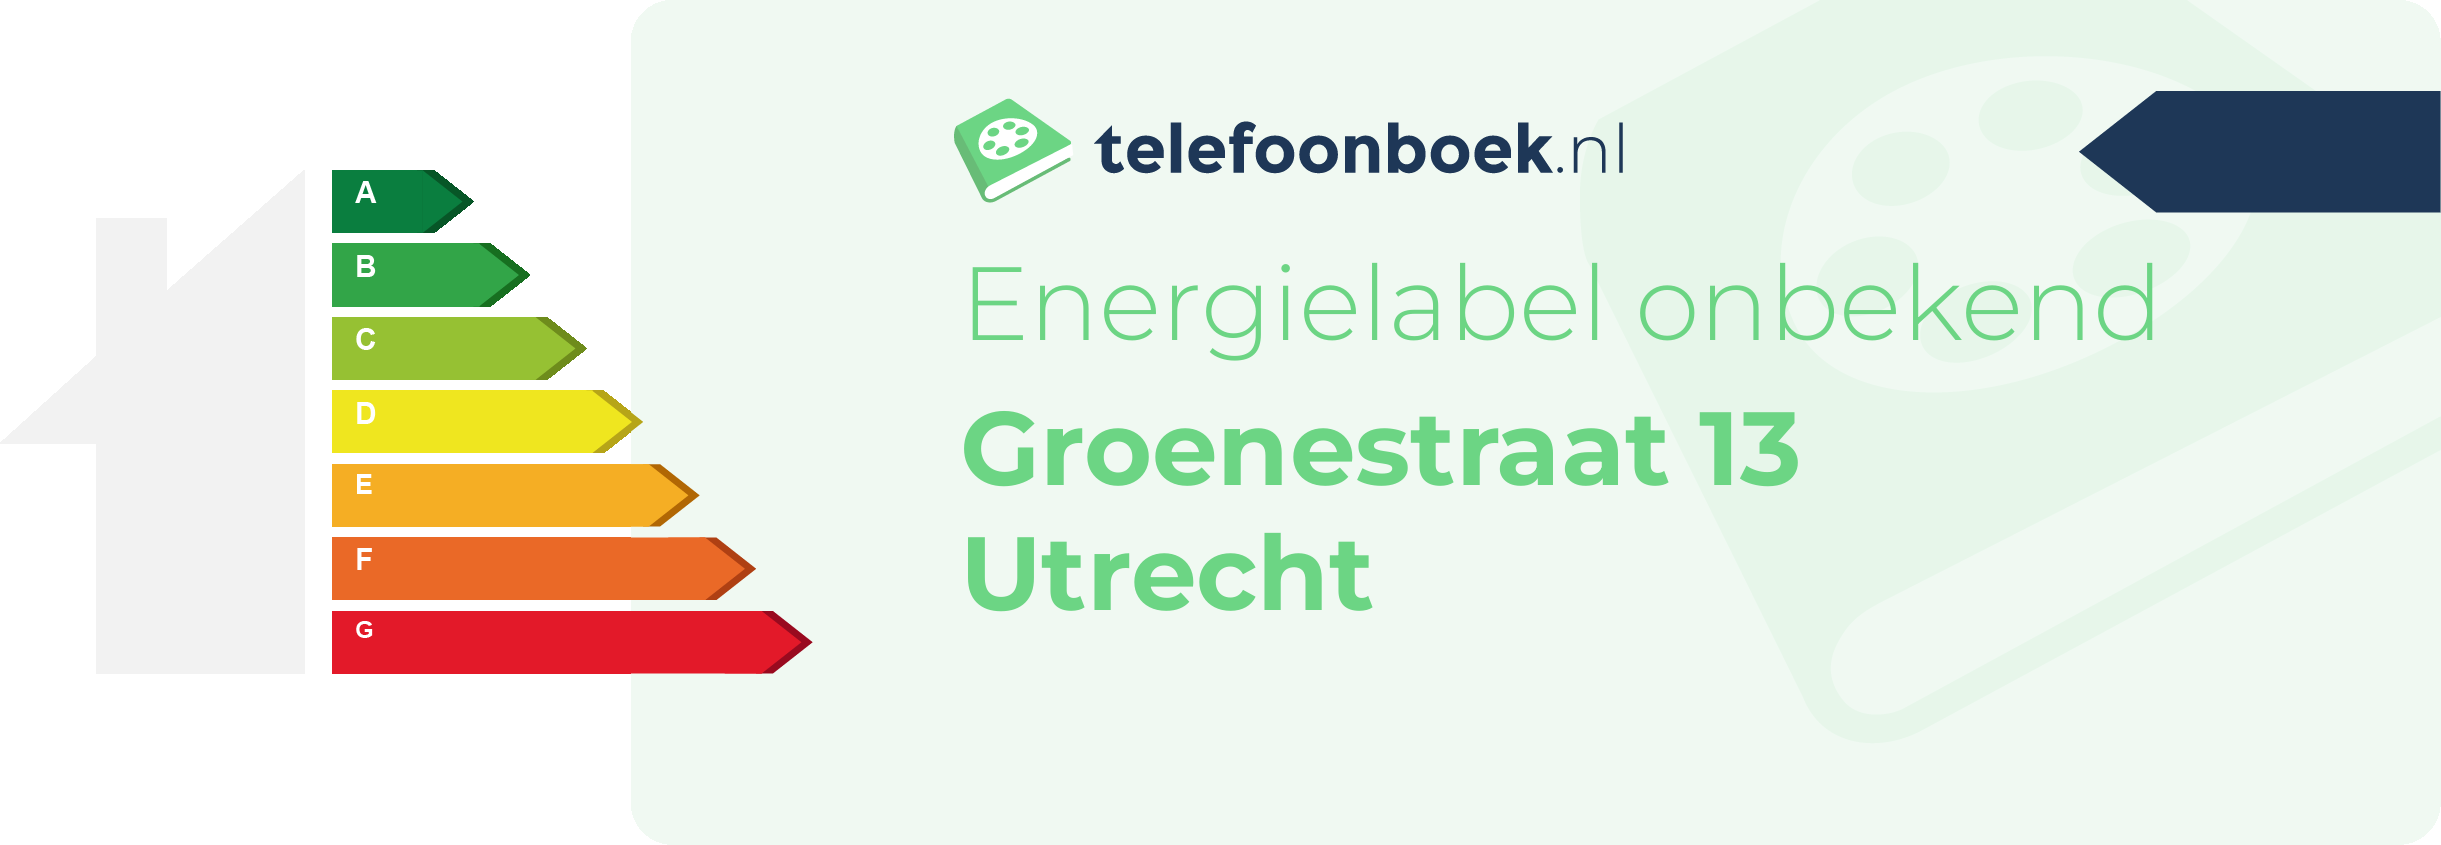 Energielabel Groenestraat 13 Utrecht